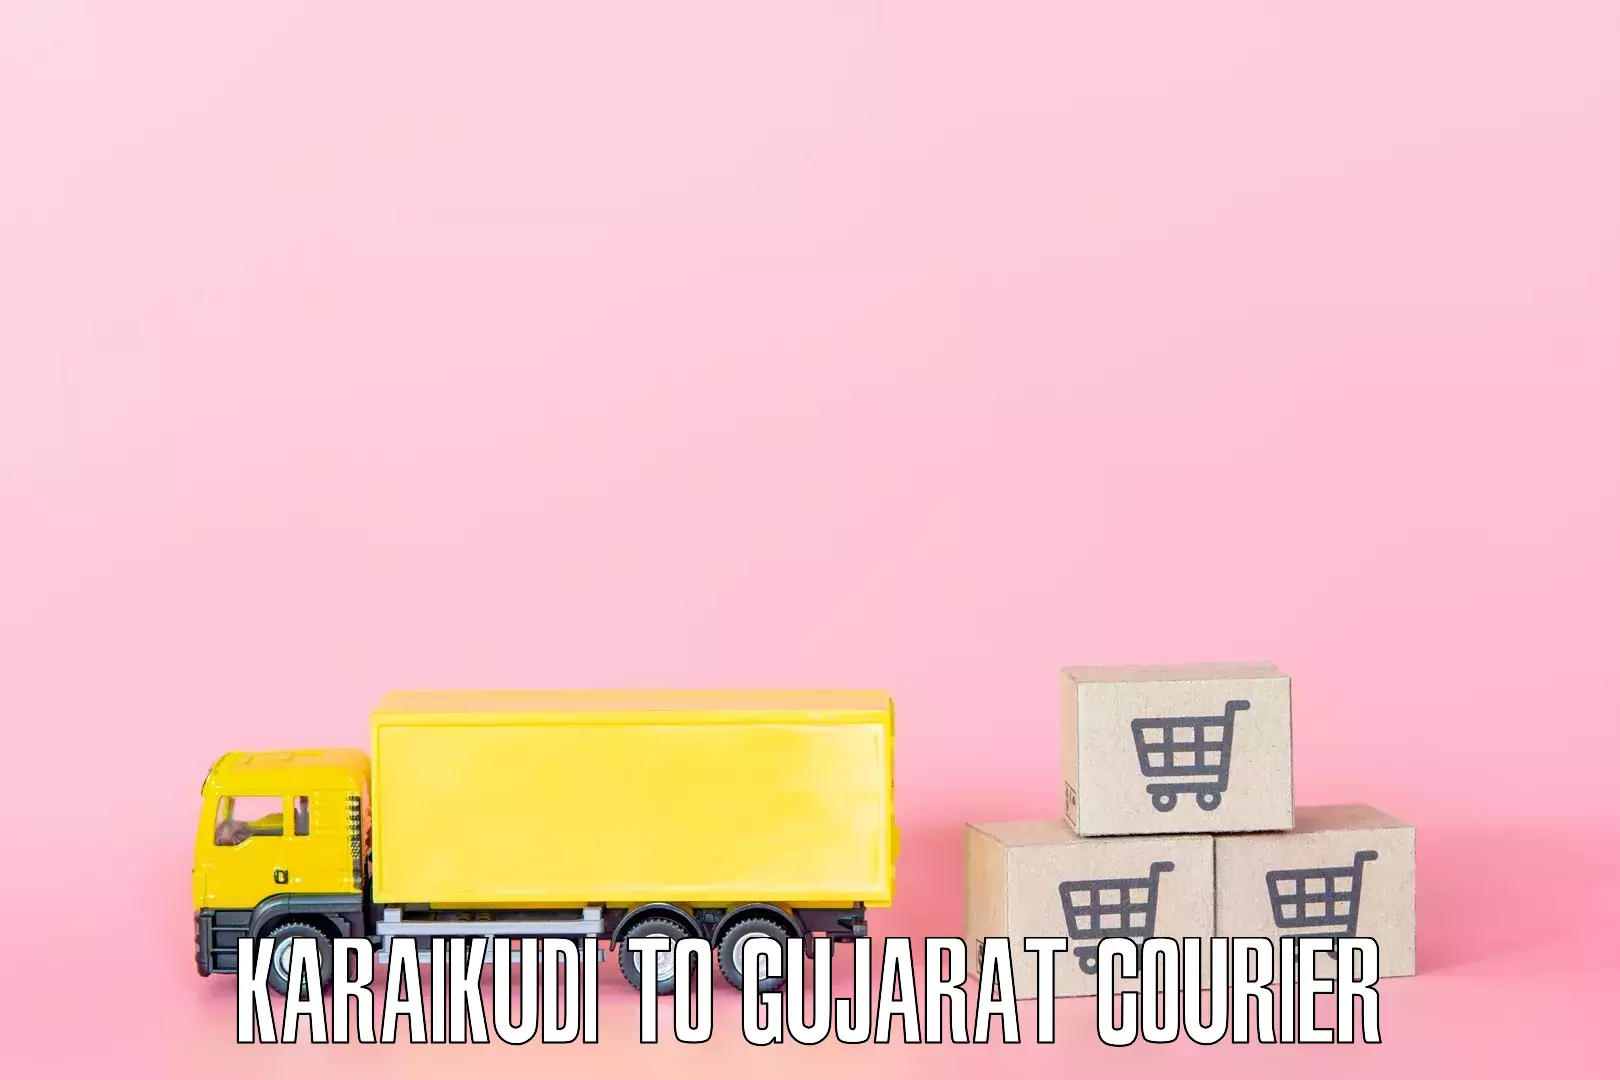 Furniture moving services Karaikudi to Gujarat